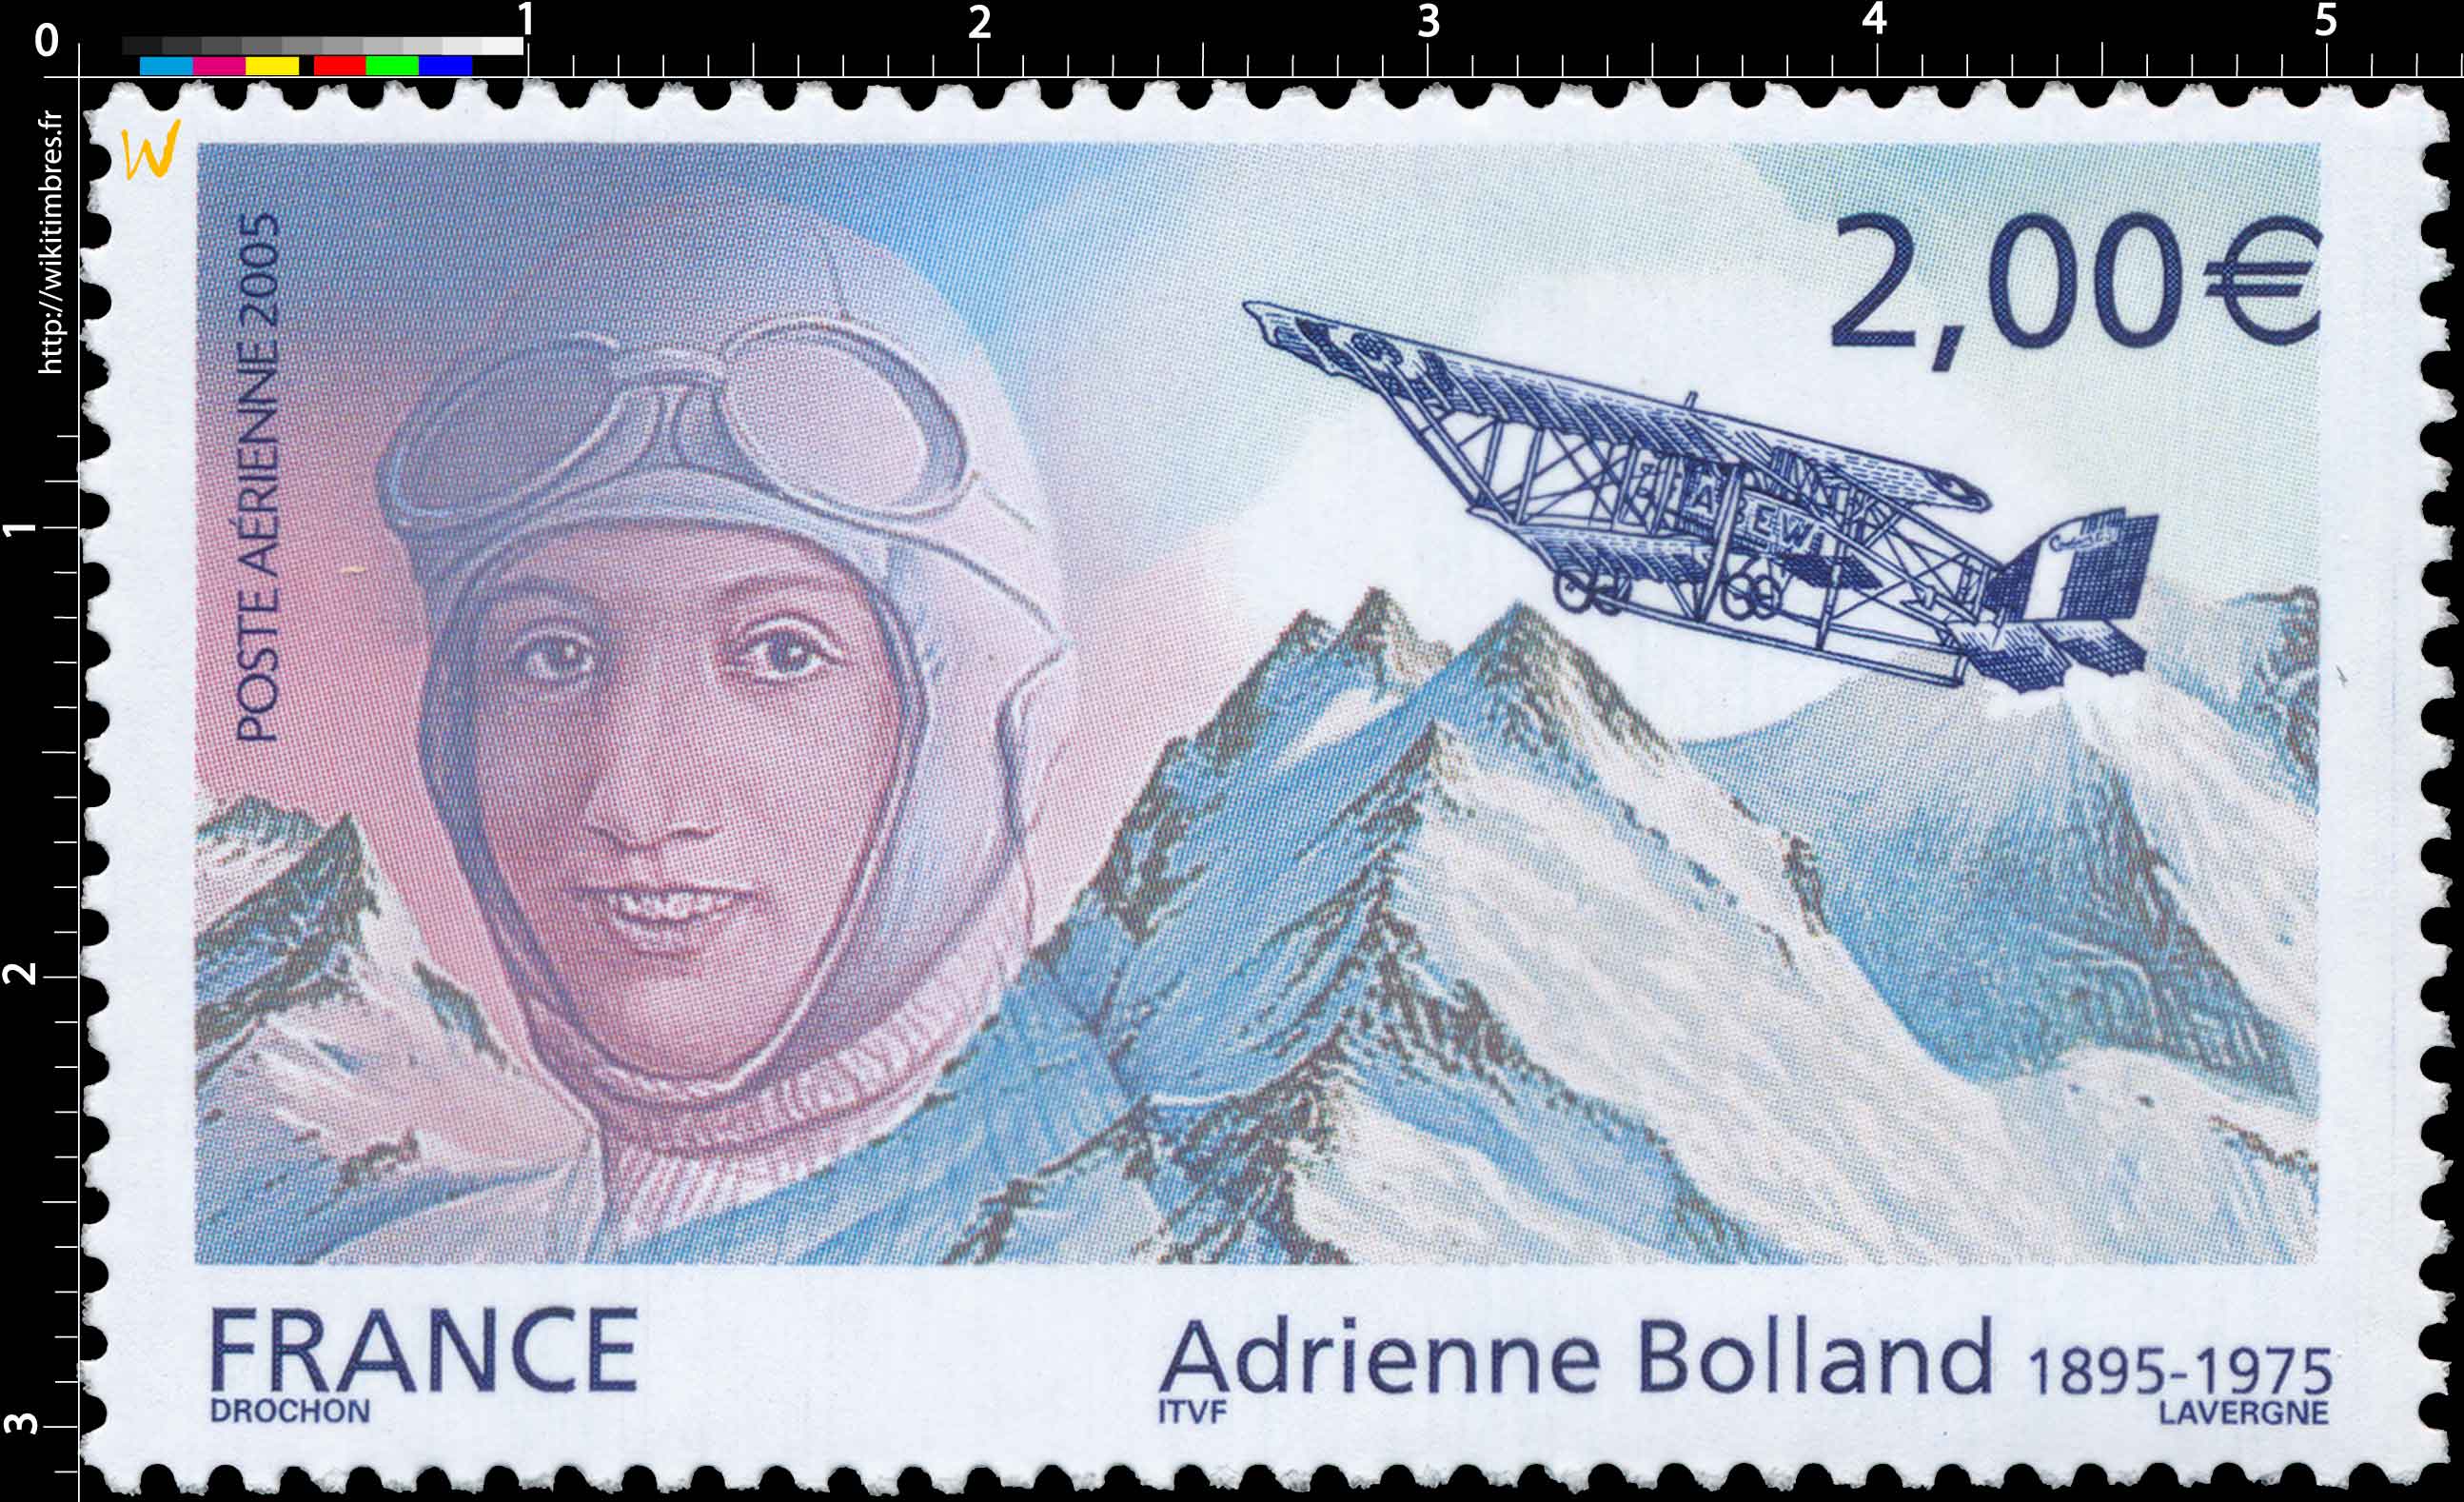 2005 Adrienne Bolland 1895-1975